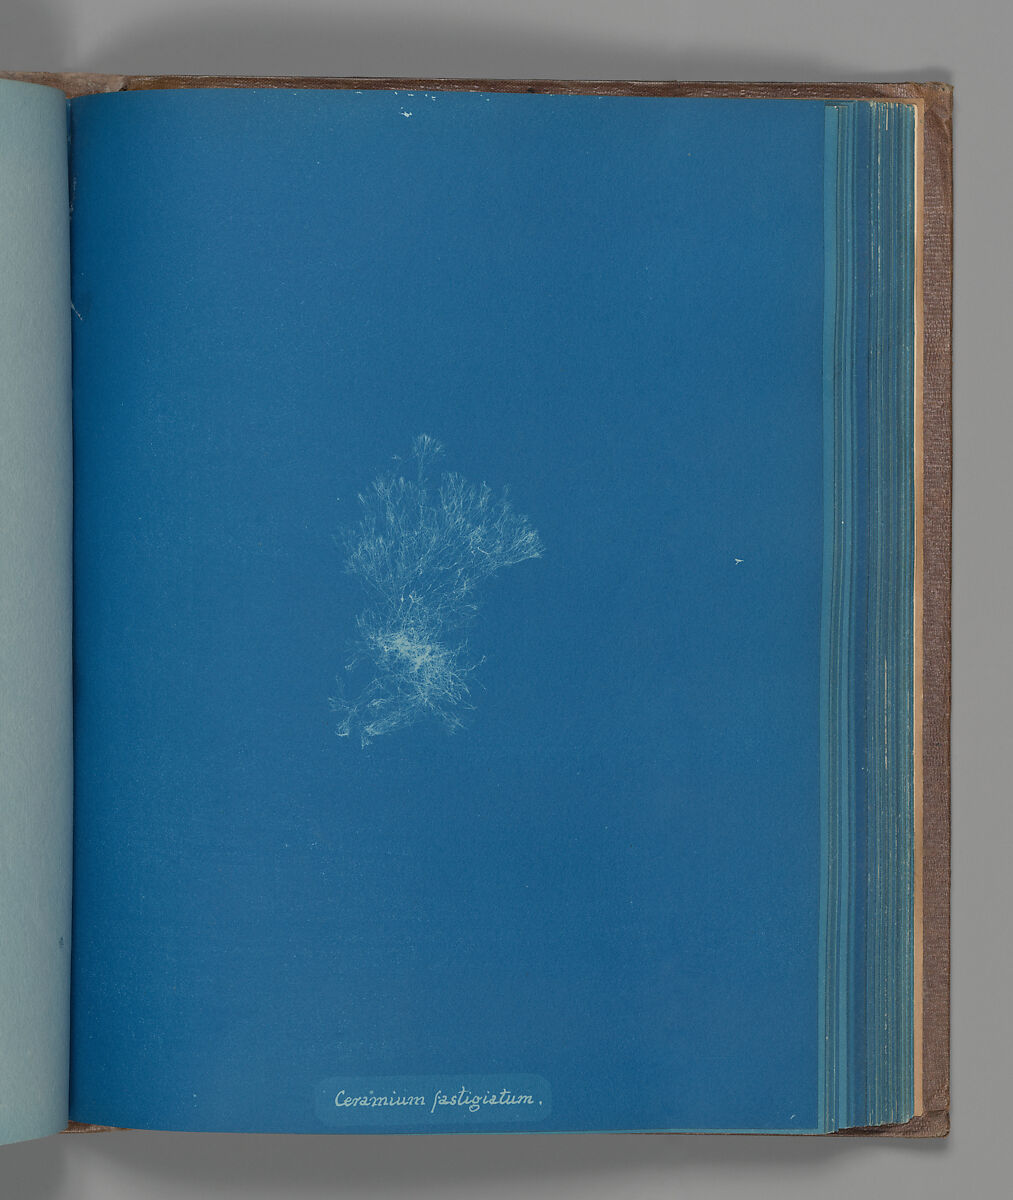 Ceramium fastigiatum, Anna Atkins (British, 1799–1871), Cyanotype 